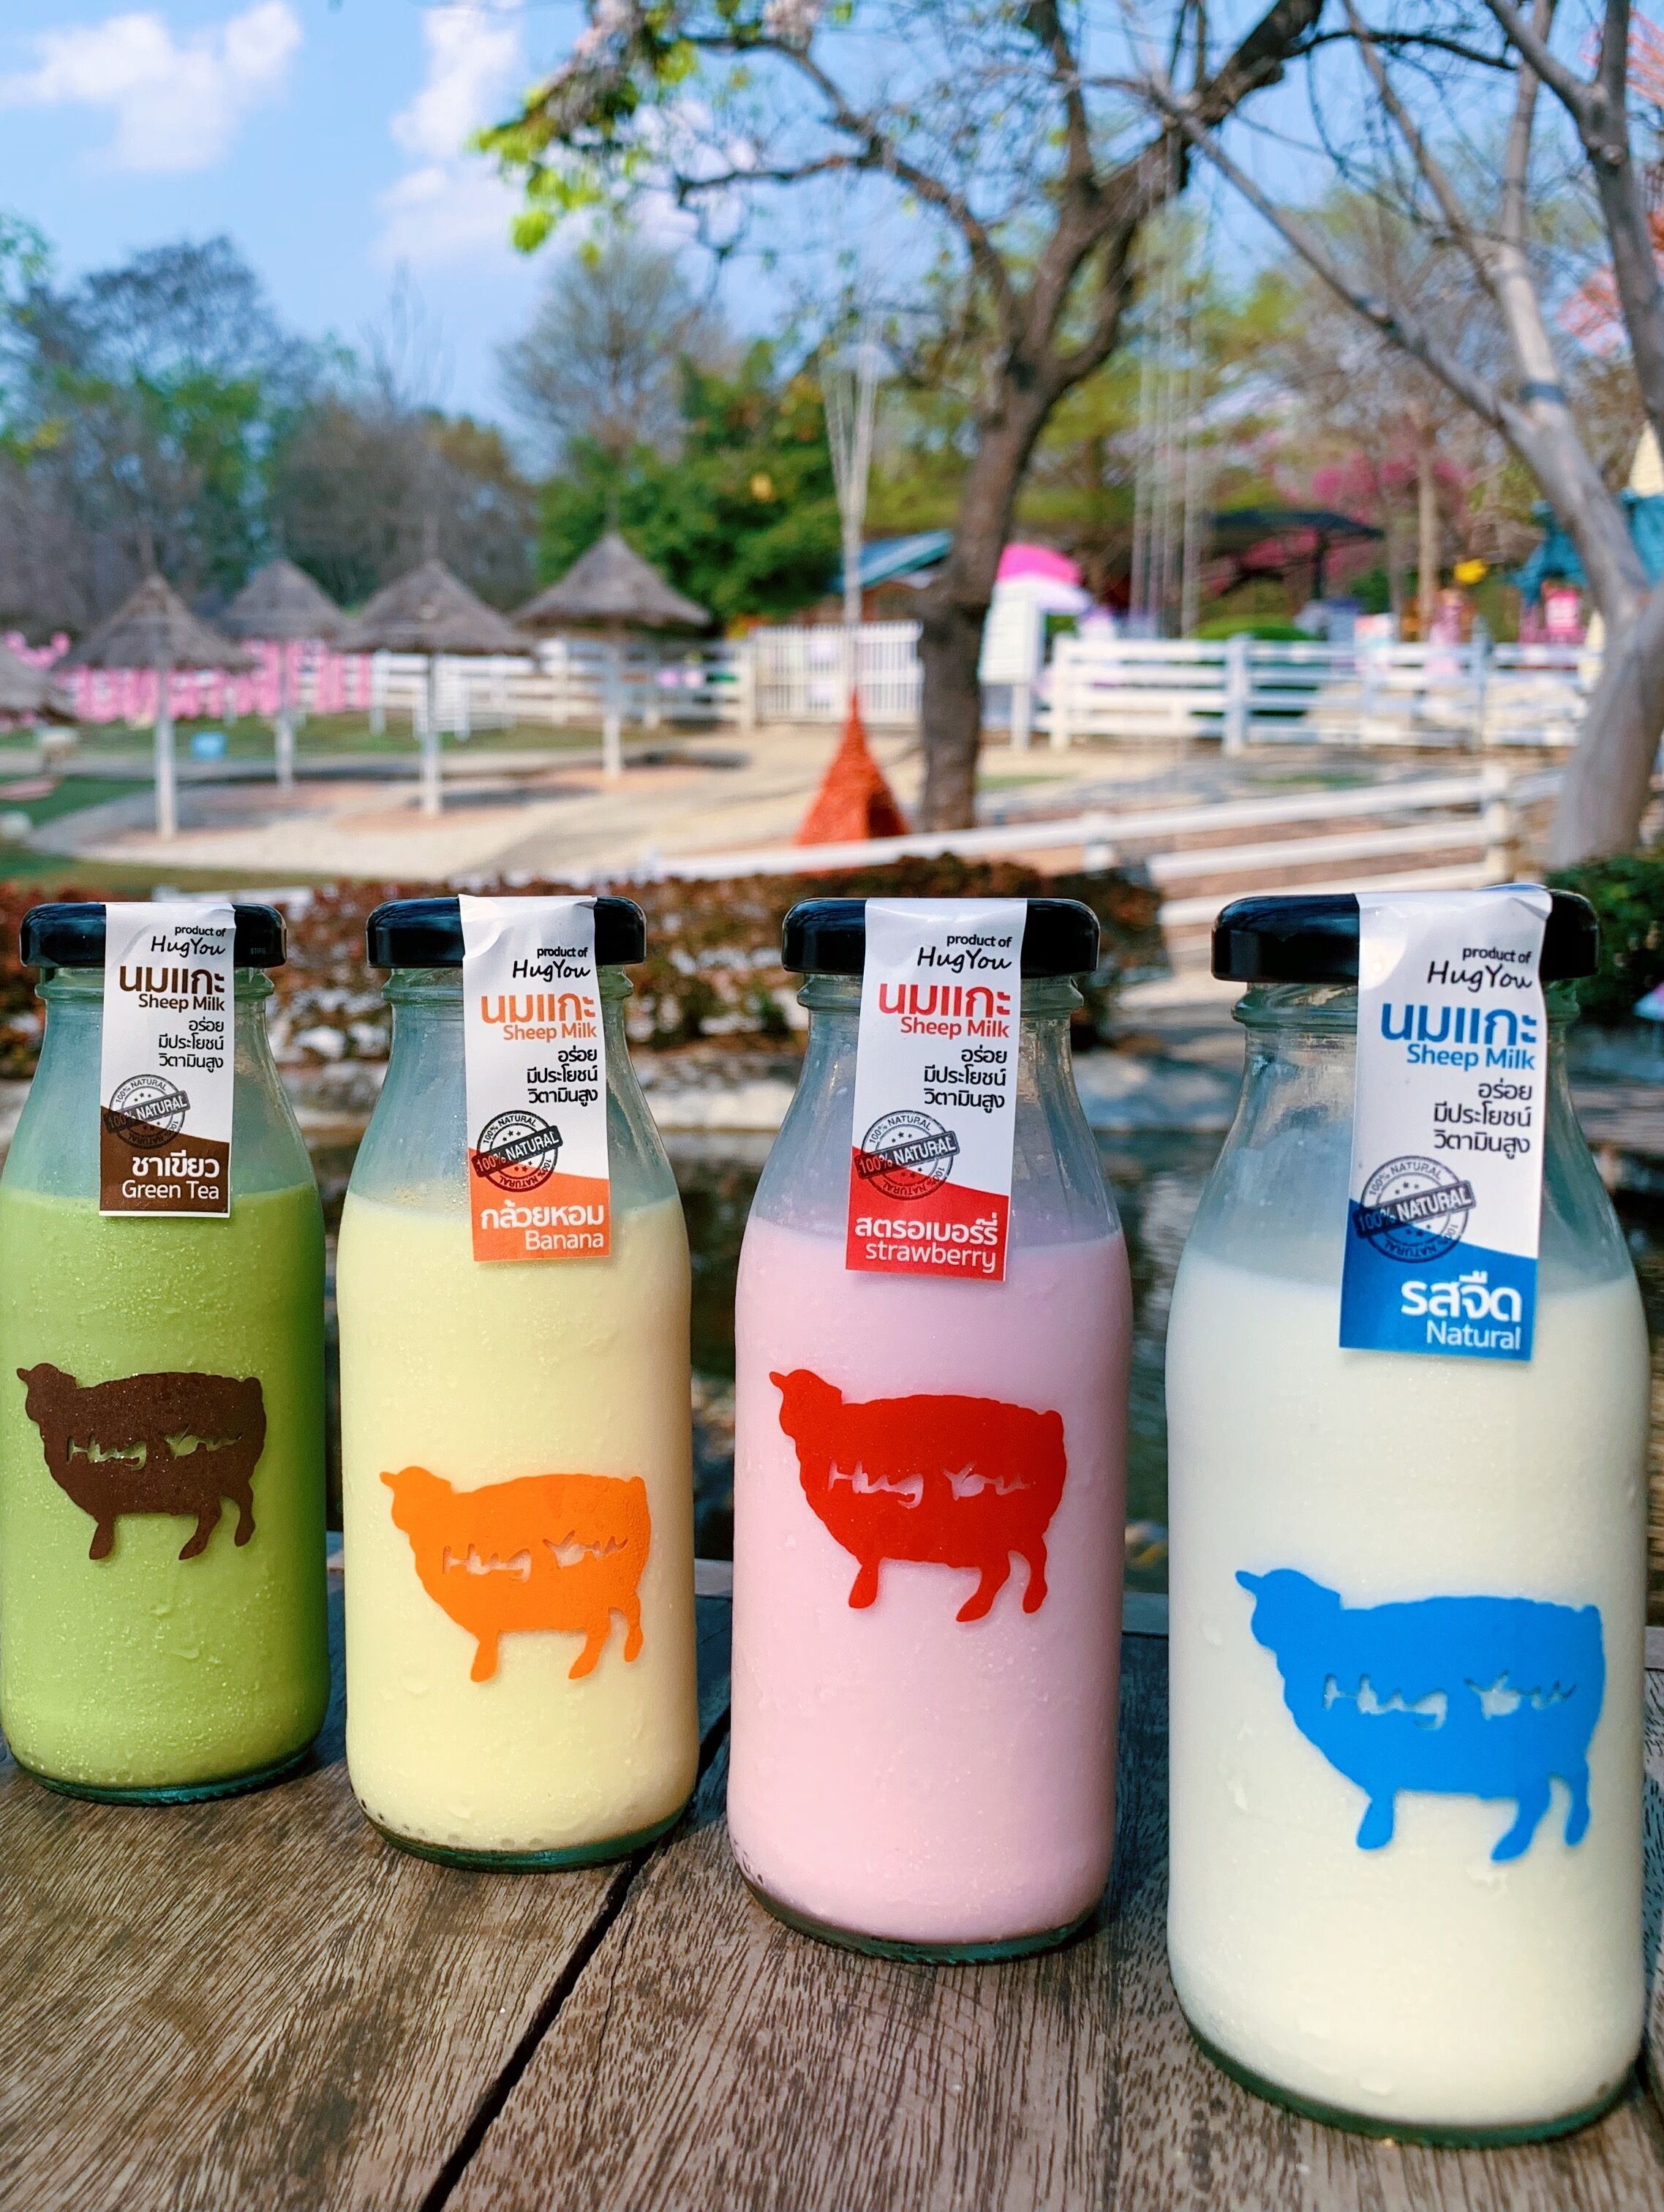 นมแกะหลากรส อร่อยดี มีประโยชน์ ที่ฟาร์มแกะฮักยู จุดแวะ ท่องเที่ยว ลำปาง ภาคเหนือ